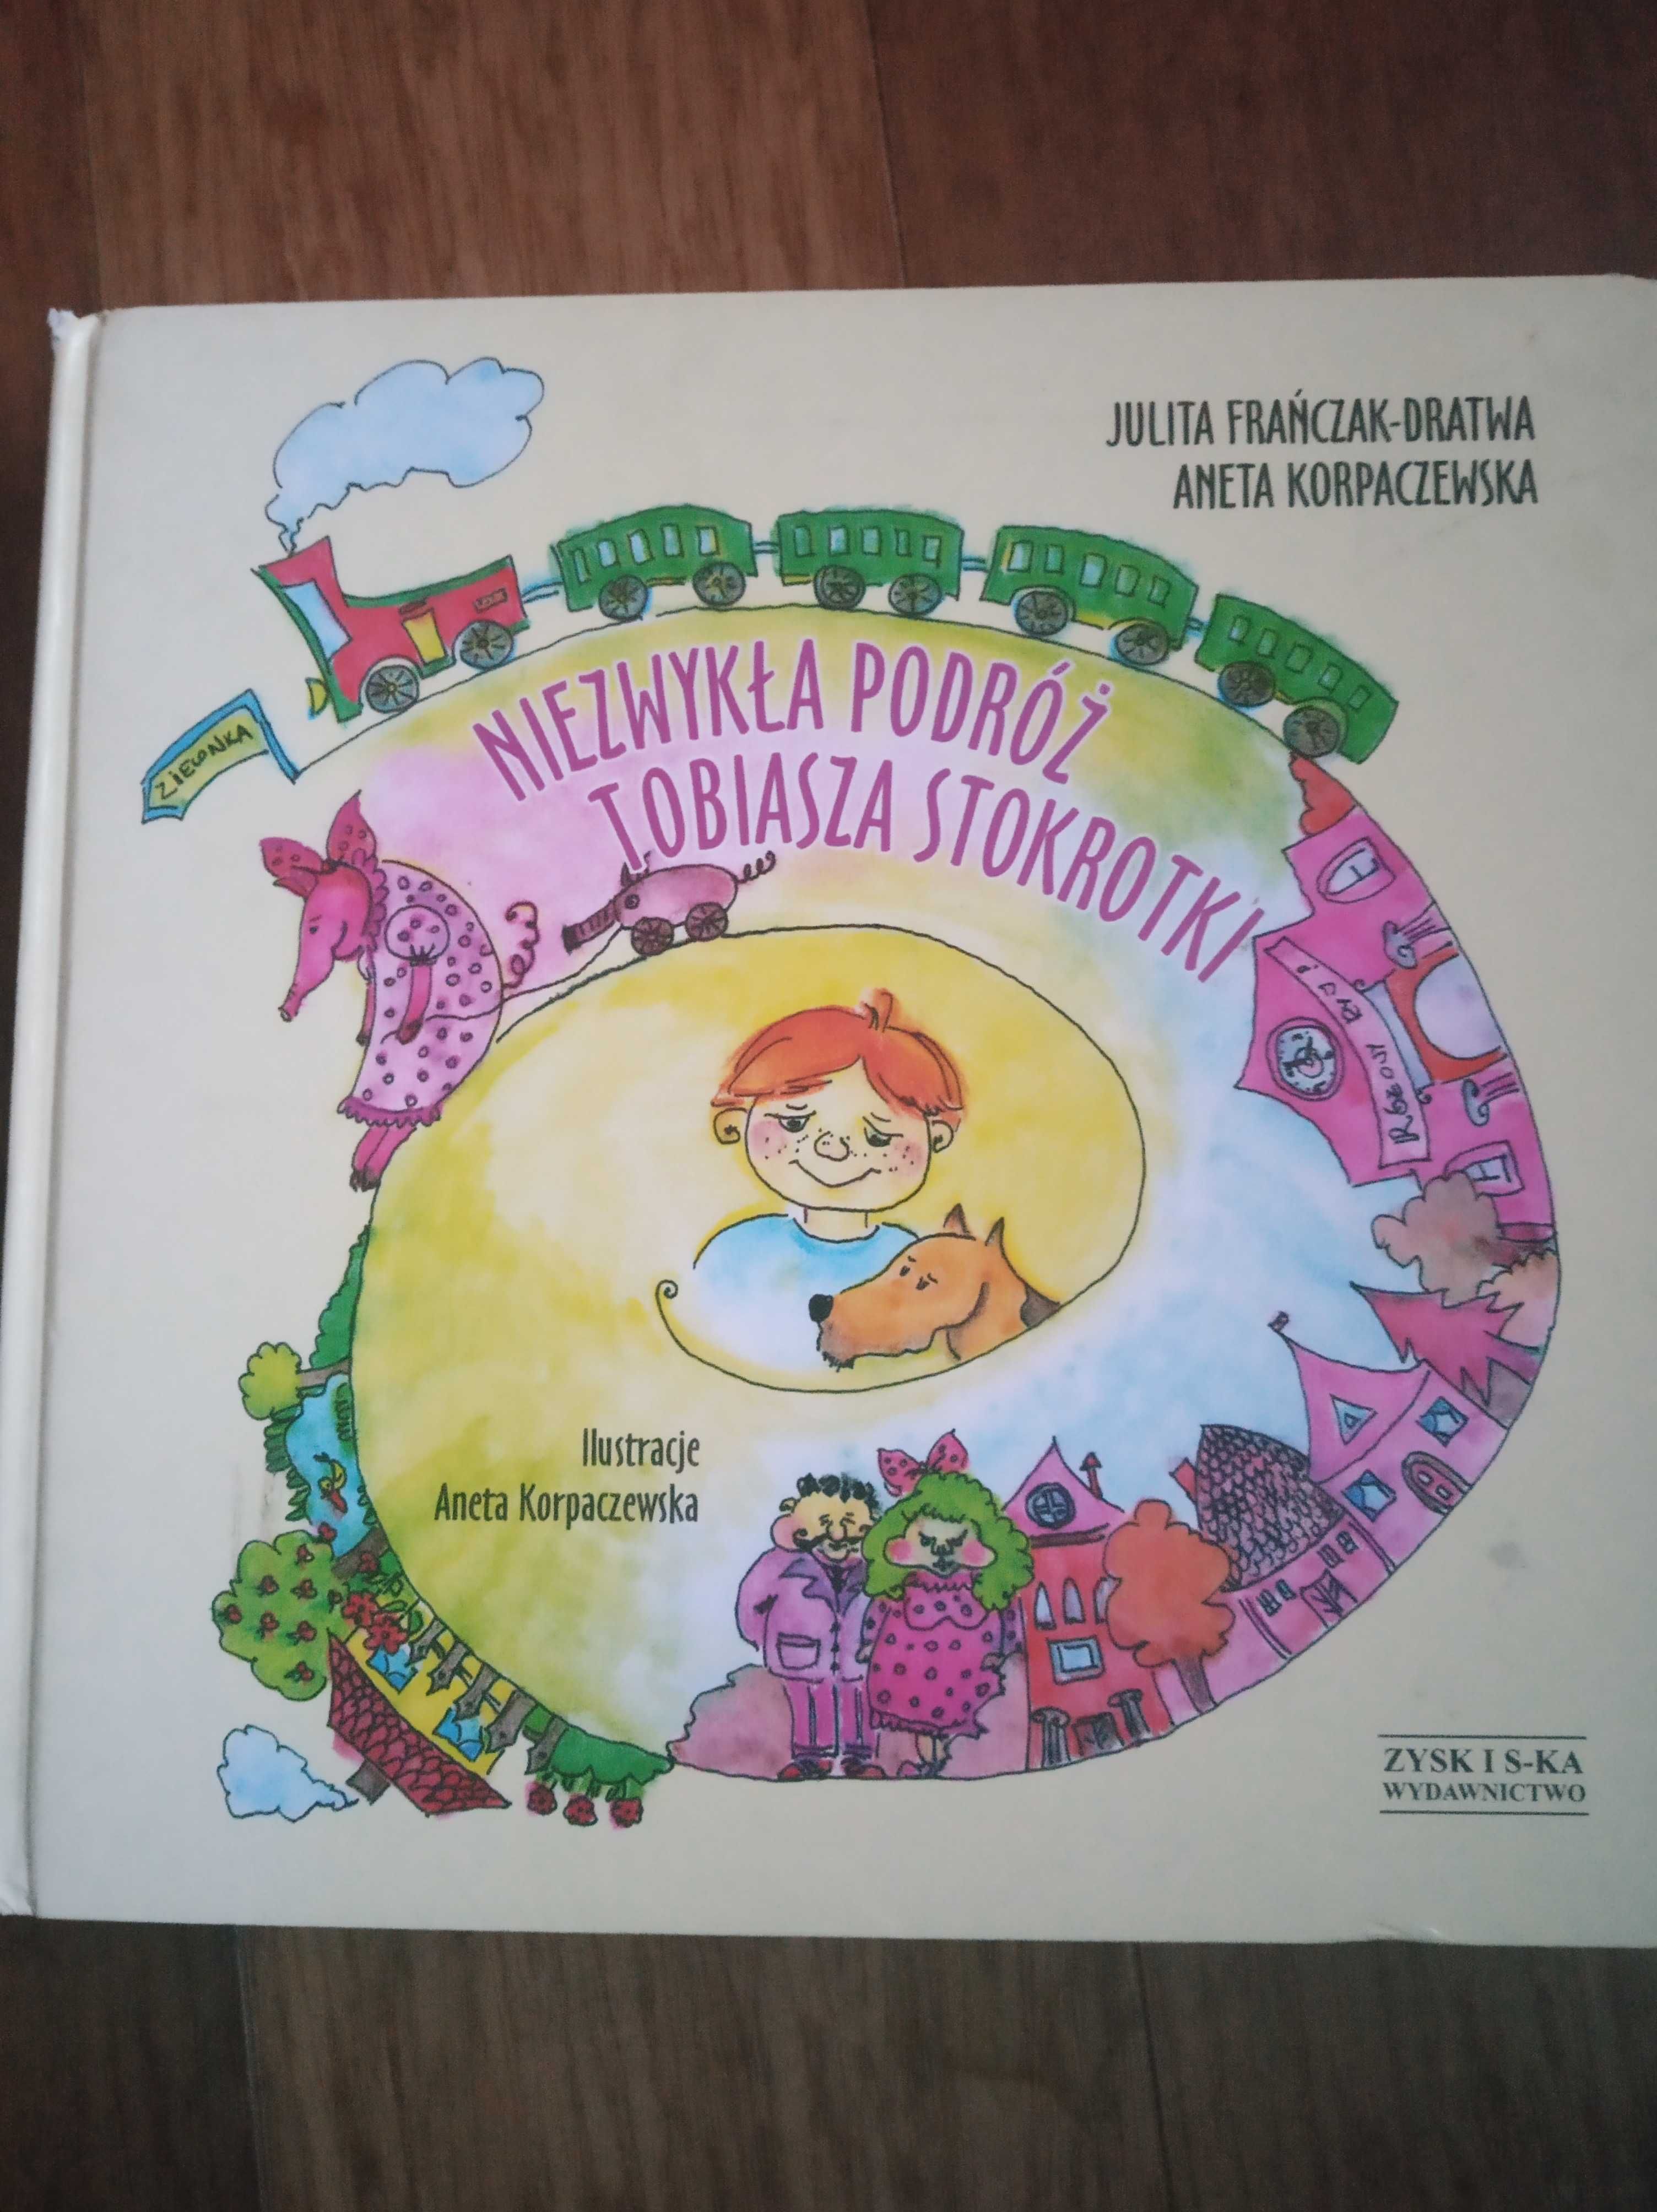 Sprzedam książkę dla dzieci "Niezwykła podróż Tobiasza Stokrotki "